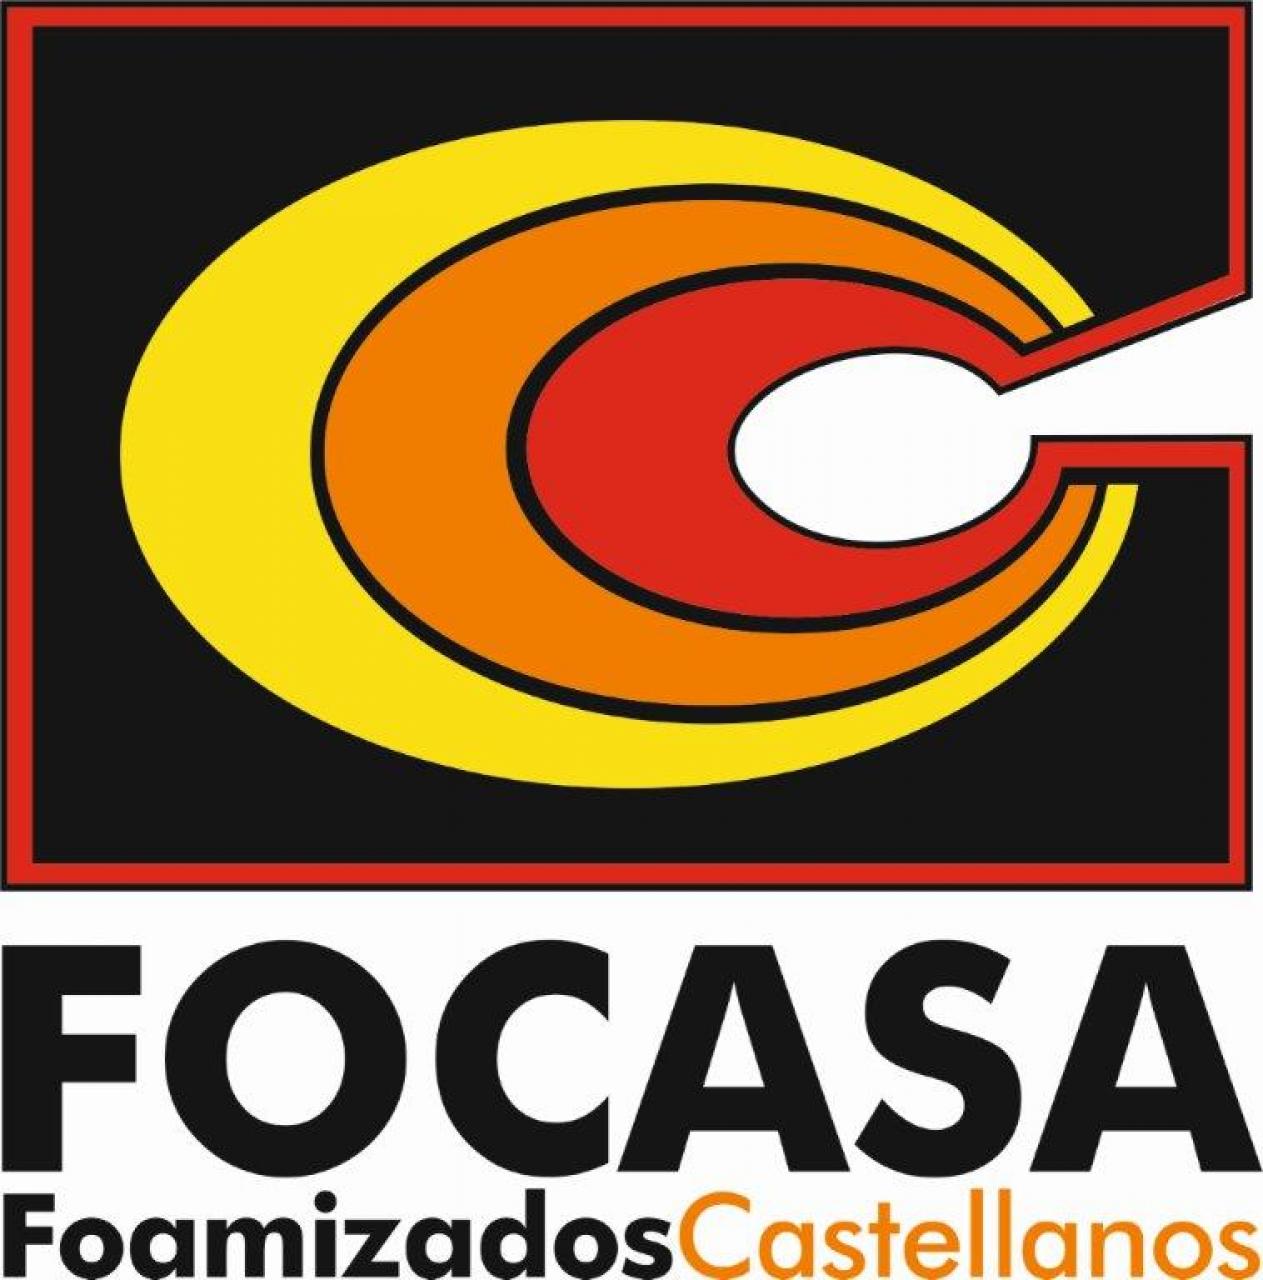 FOAMIZADOS CASTELLANOS (FOCASA)